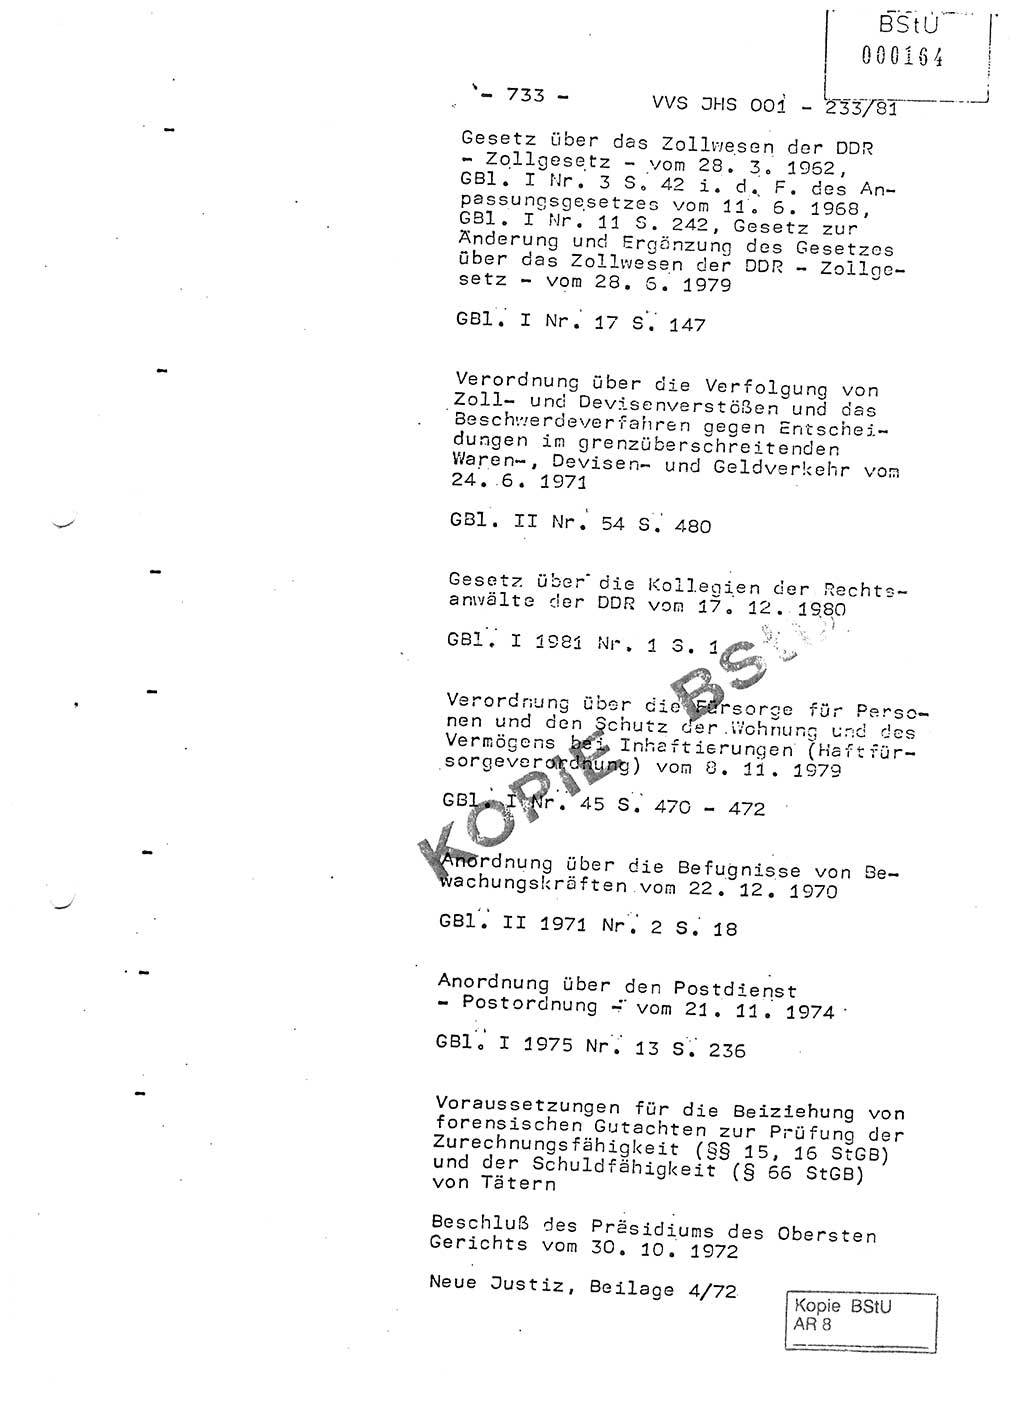 Dissertation Oberstleutnant Horst Zank (JHS), Oberstleutnant Dr. Karl-Heinz Knoblauch (JHS), Oberstleutnant Gustav-Adolf Kowalewski (HA Ⅸ), Oberstleutnant Wolfgang Plötner (HA Ⅸ), Ministerium für Staatssicherheit (MfS) [Deutsche Demokratische Republik (DDR)], Juristische Hochschule (JHS), Vertrauliche Verschlußsache (VVS) o001-233/81, Potsdam 1981, Blatt 733 (Diss. MfS DDR JHS VVS o001-233/81 1981, Bl. 733)